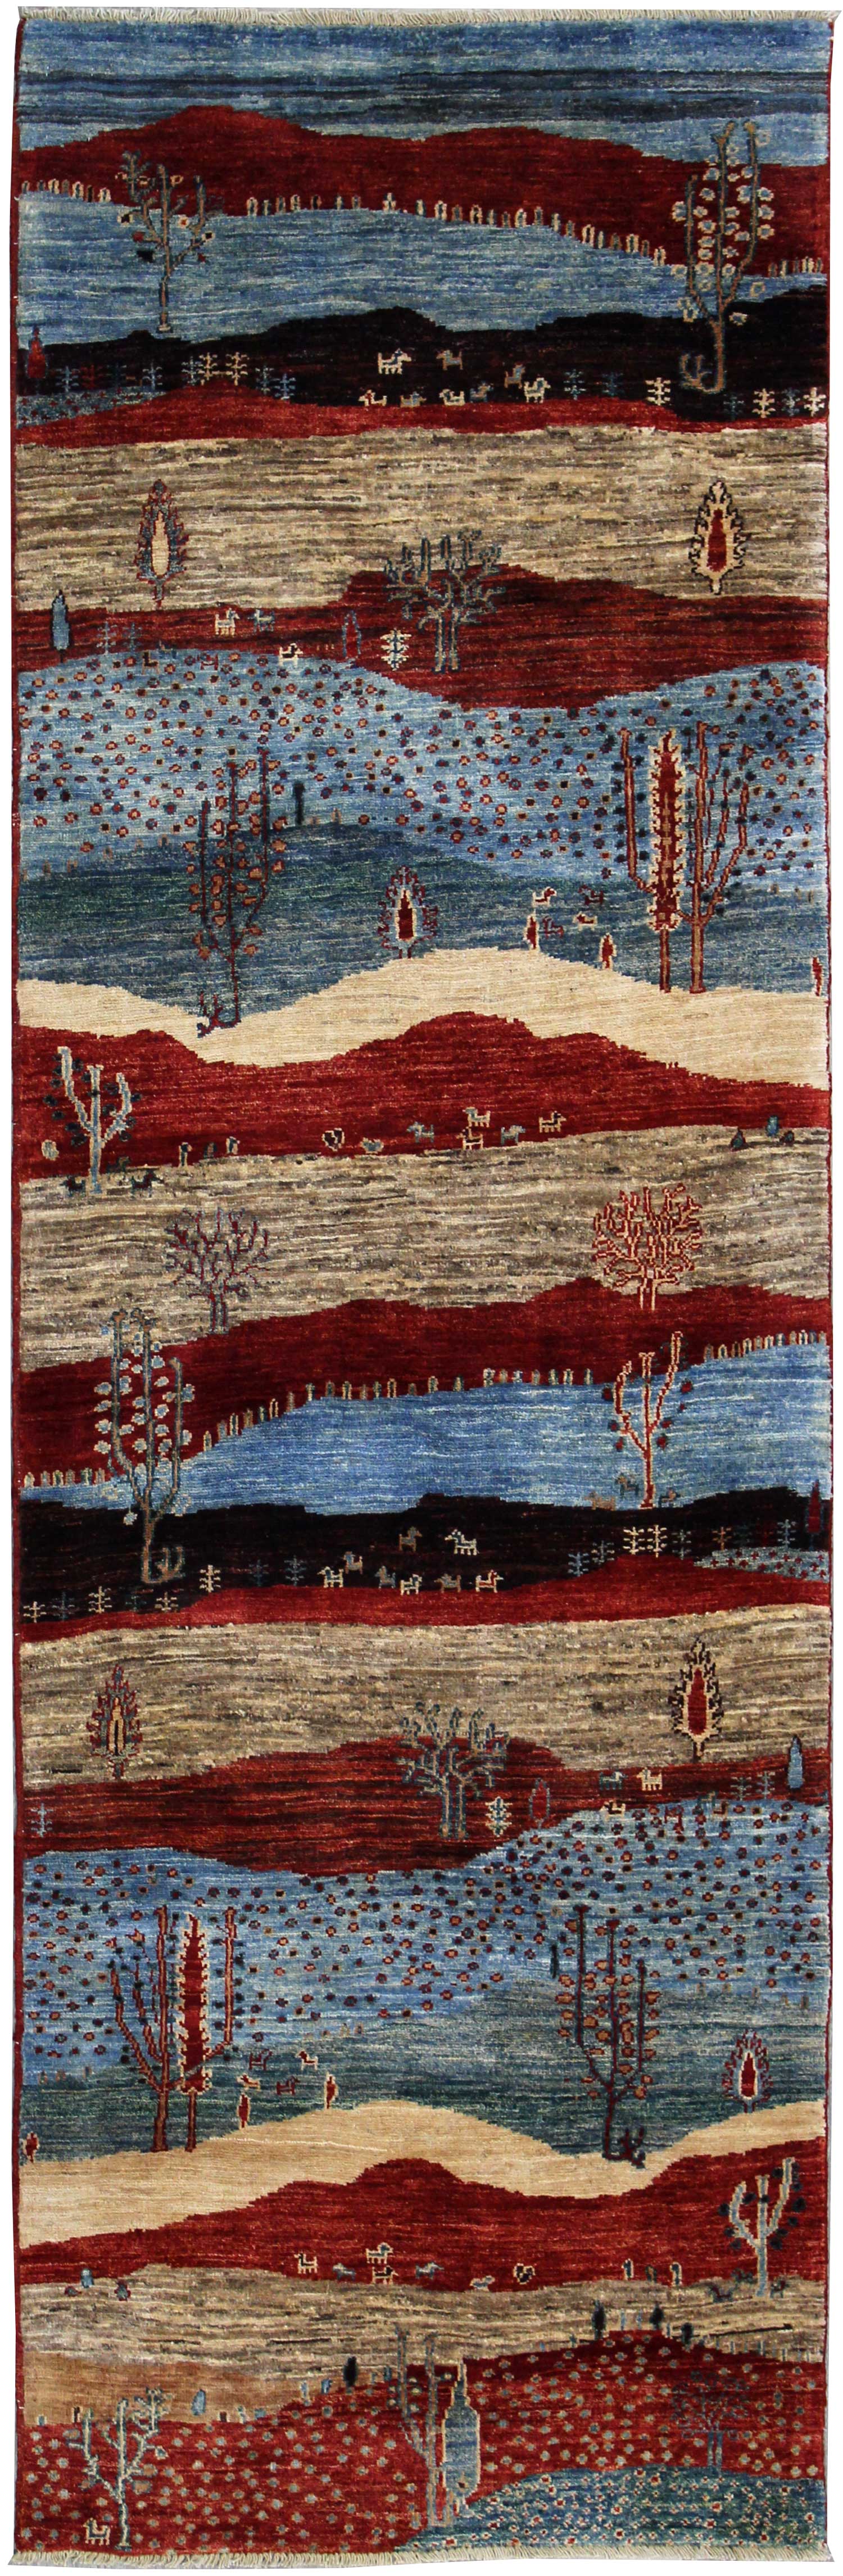 Landscape Handwoven Tribal Rug